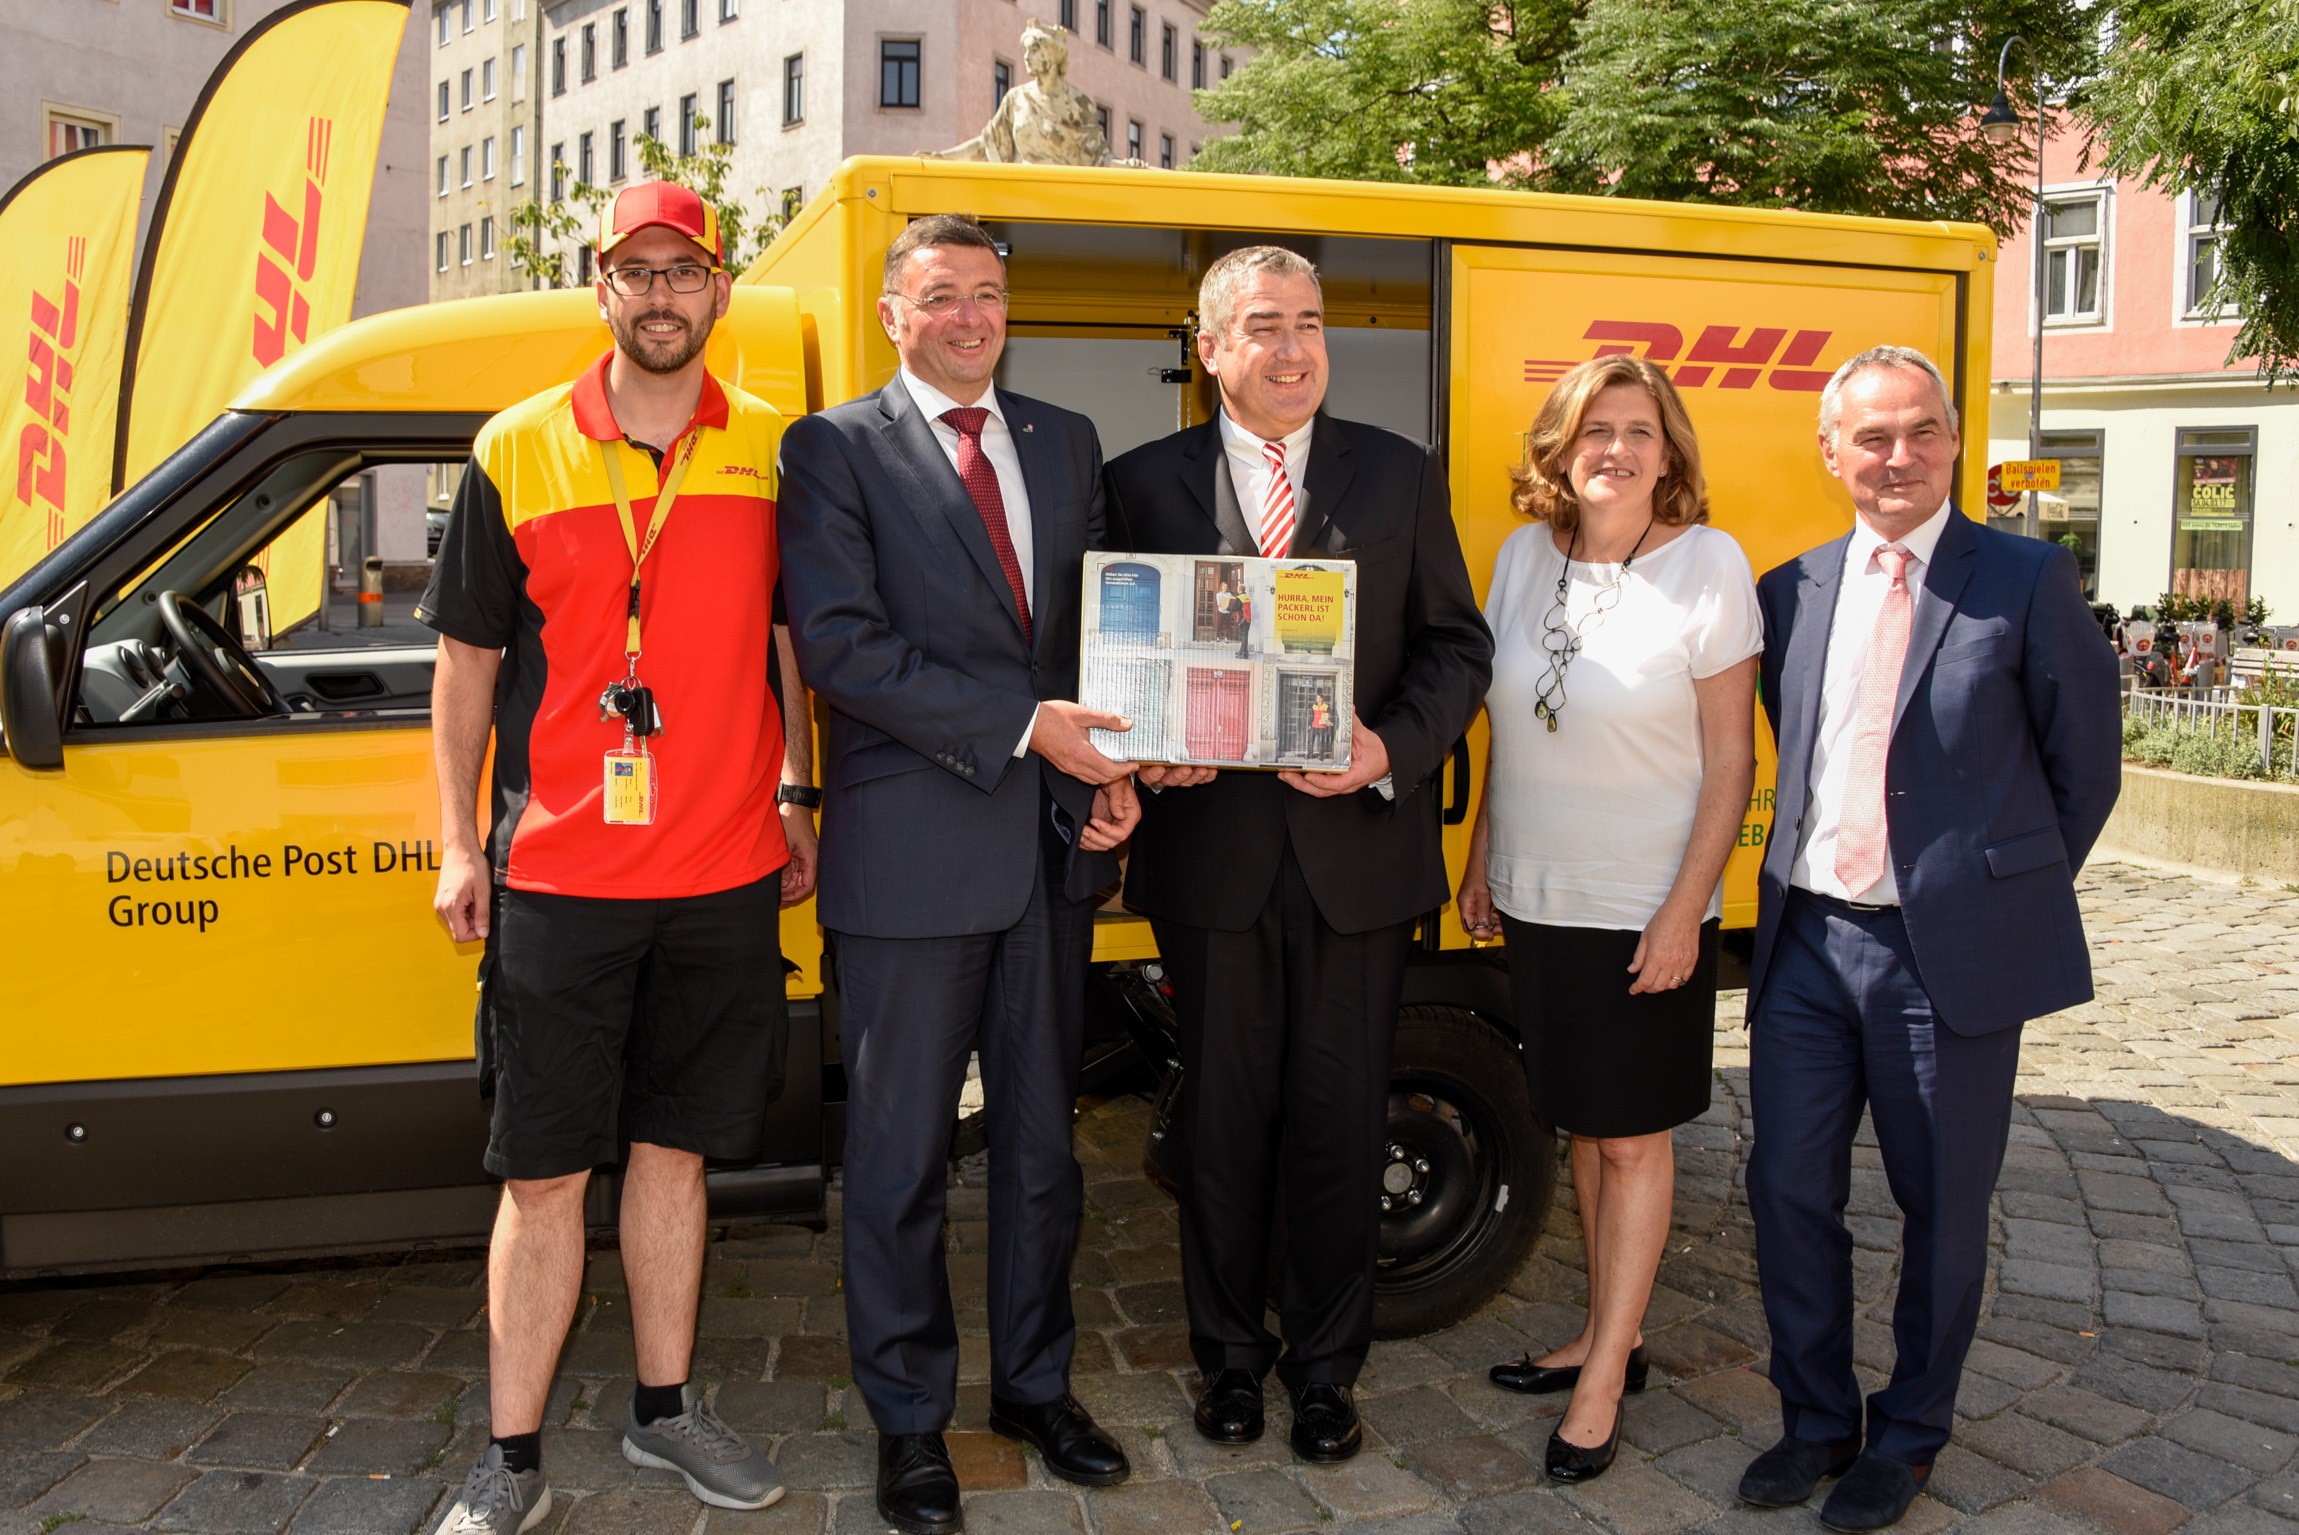 DHL Paket Austria startet emissionsfreien Lieferservice in Wien